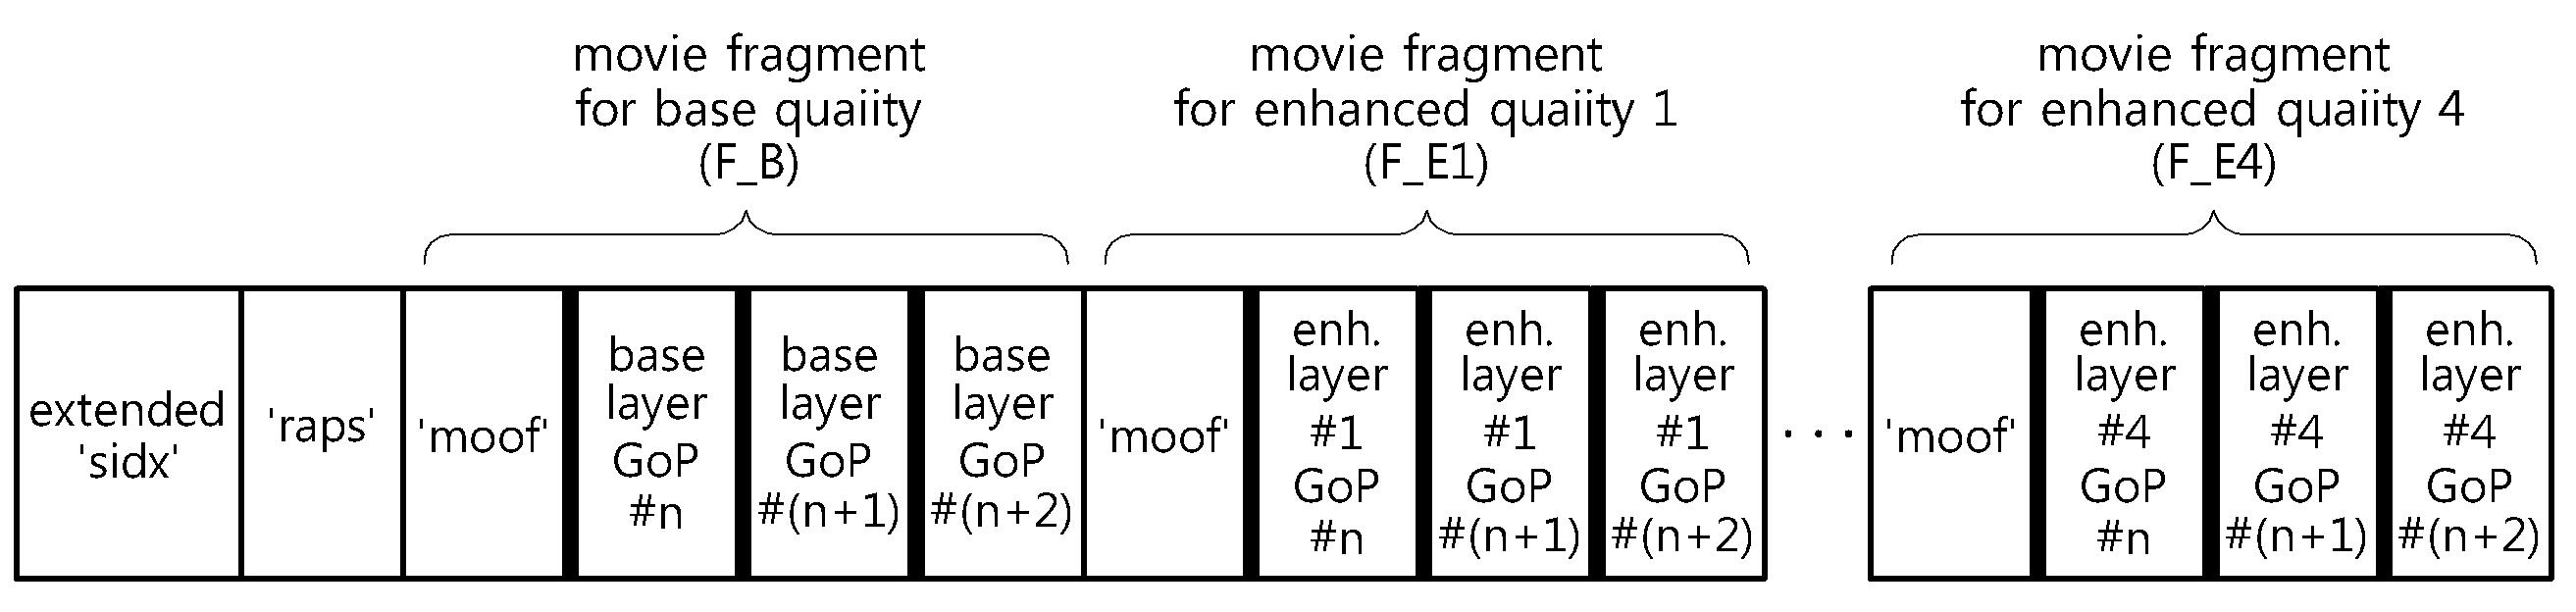 스케일러블 비디오 코딩 기반의 스트리밍 서비스를 위한 랜덤 액세스 지원 방법 대표 이미지